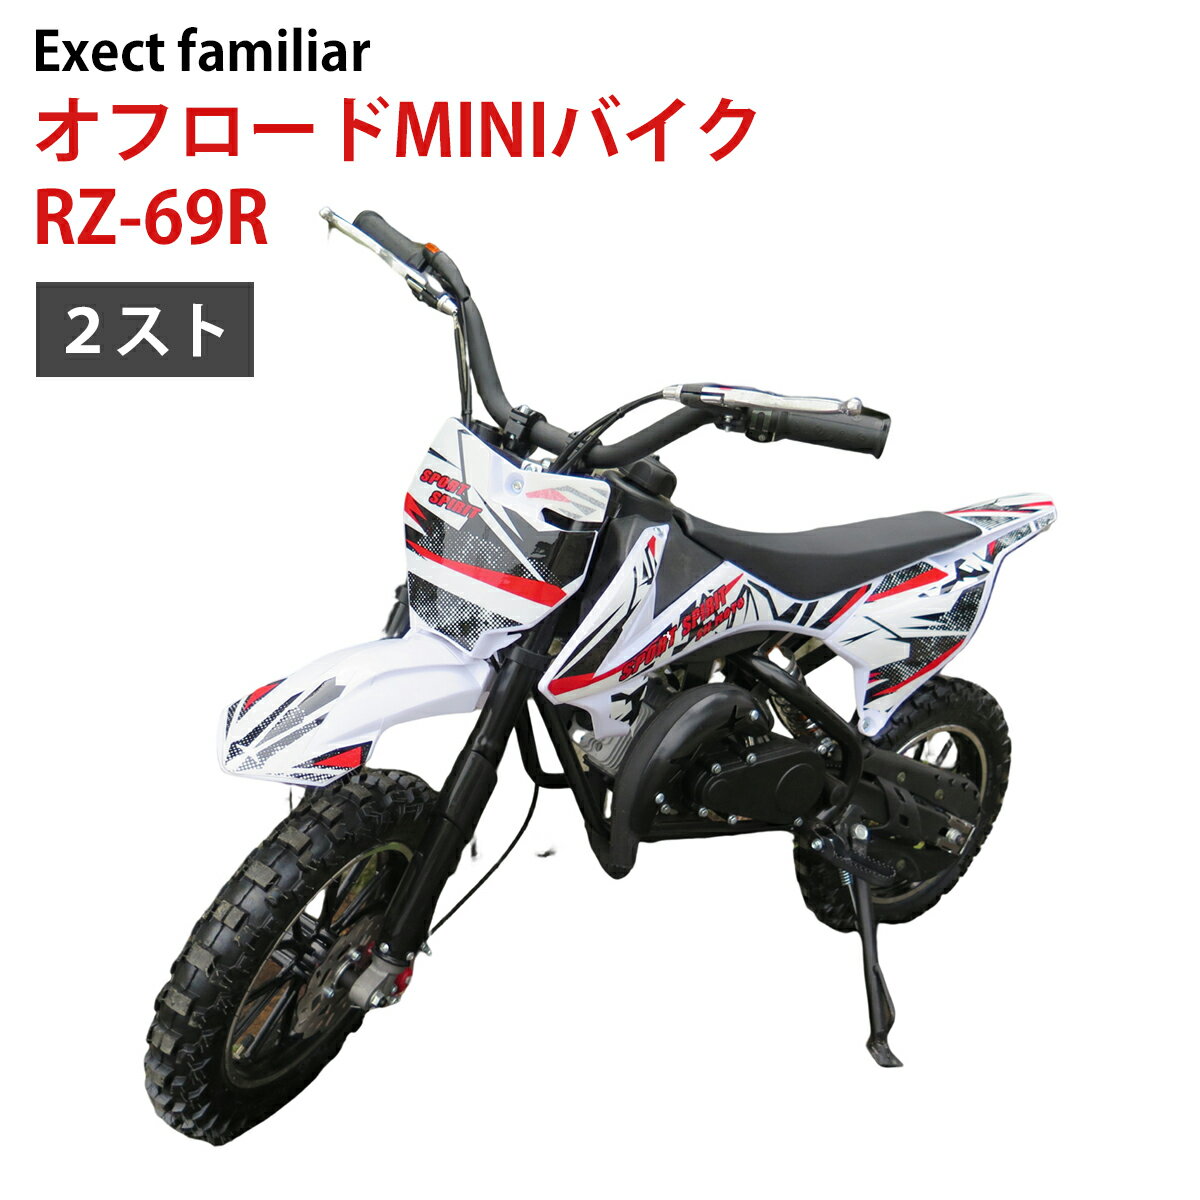 オフロード MINI バイク RZ-69R 50...の商品画像